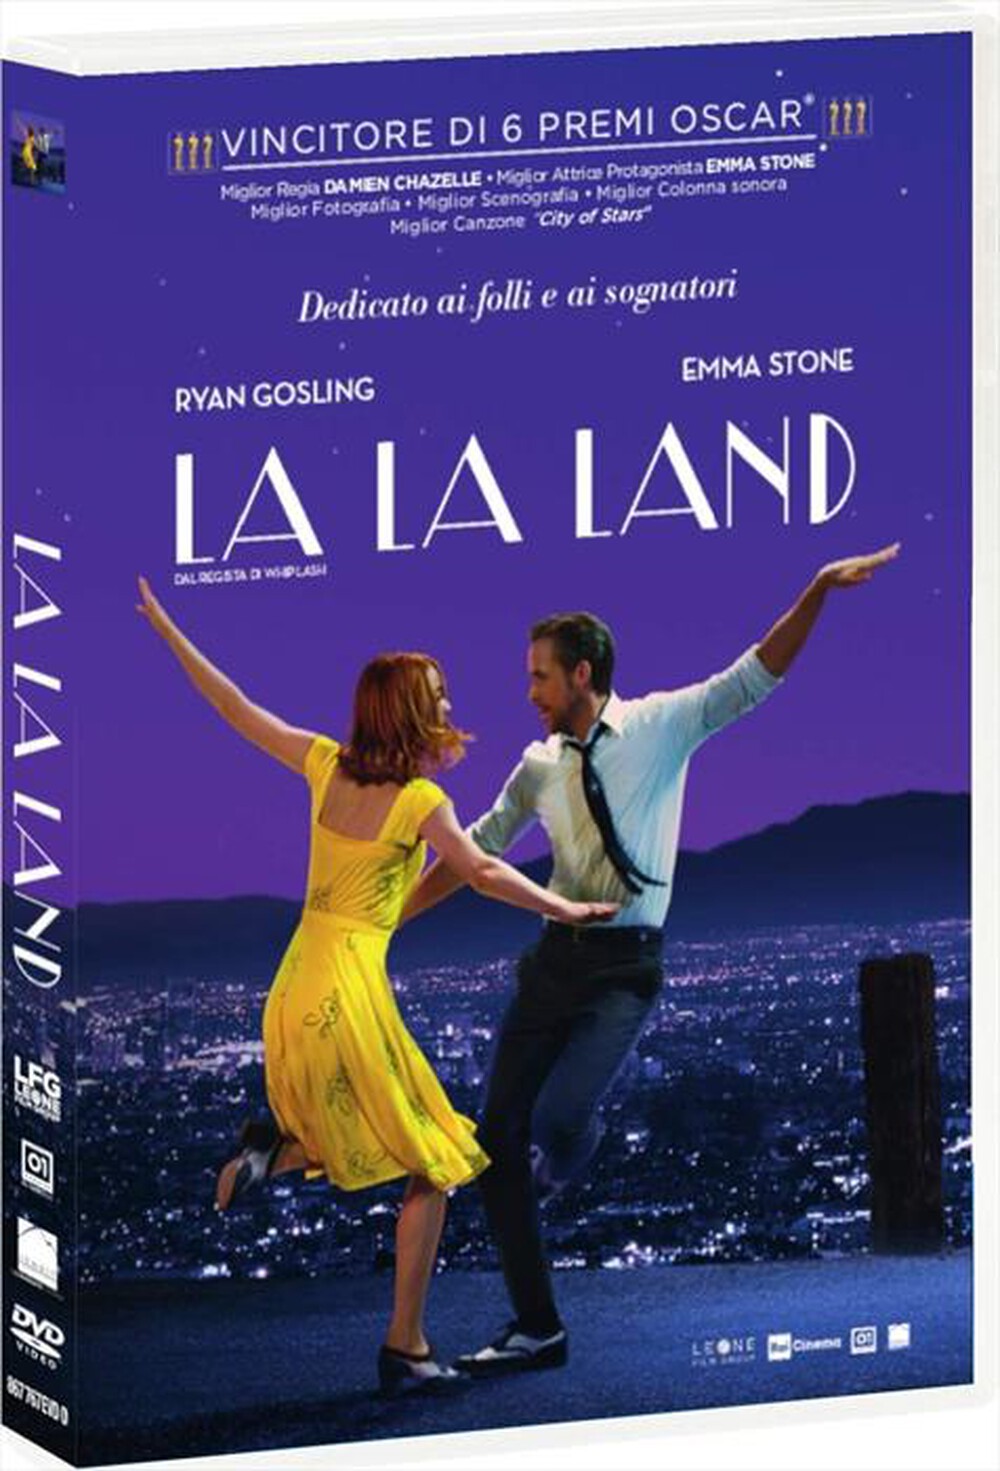 "01 DISTRIBUTION - La La Land"